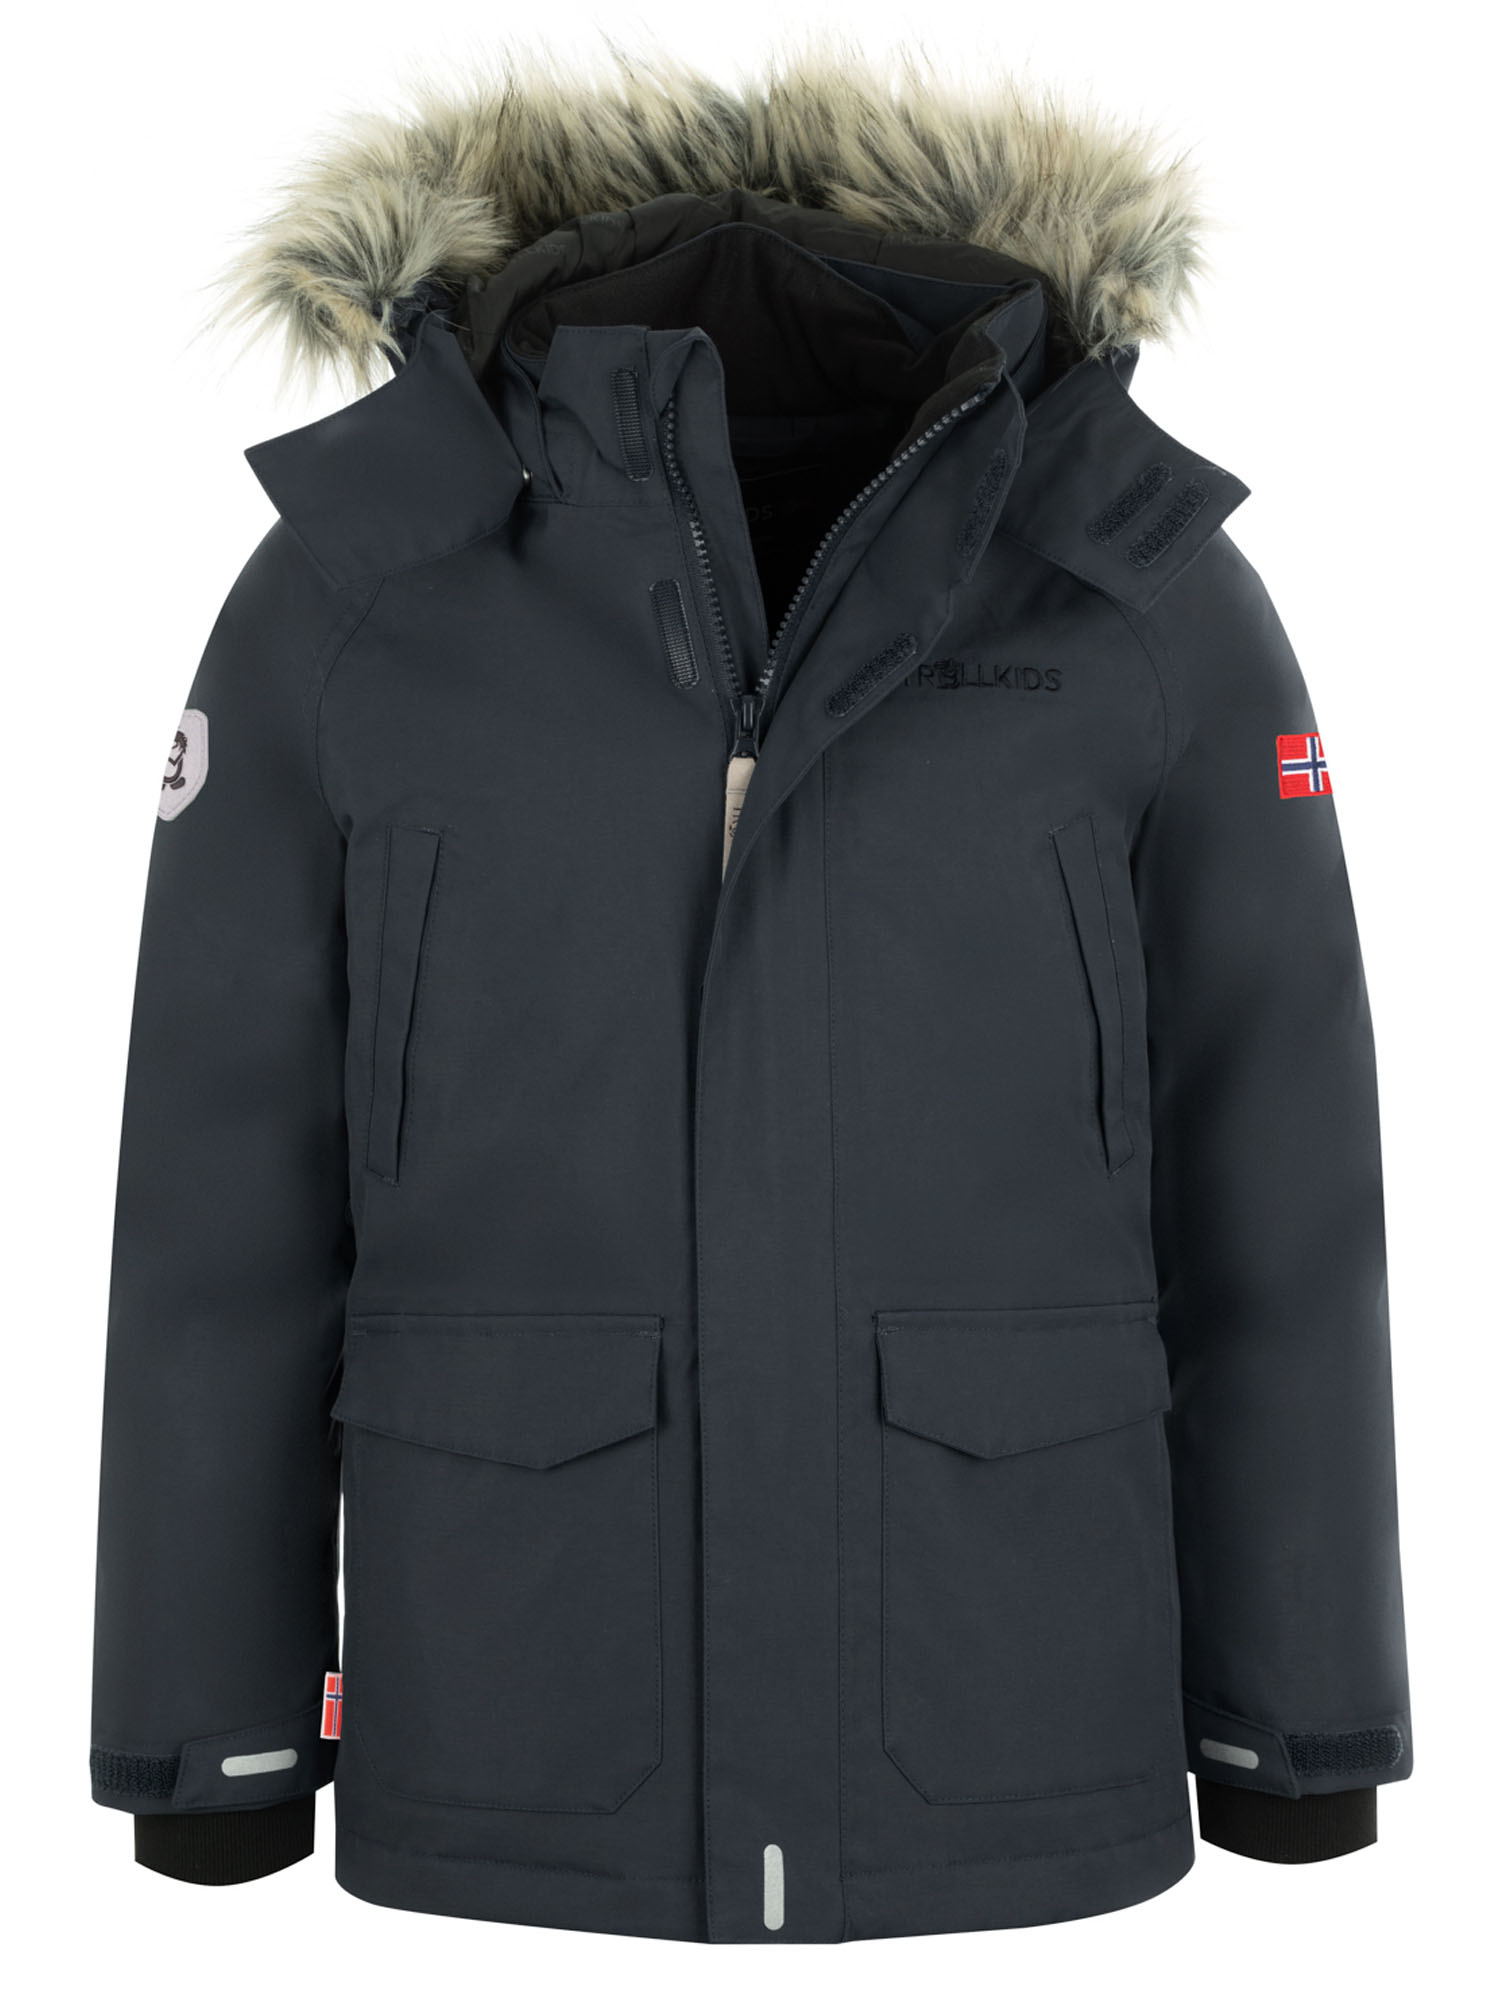 Куртка Детская Trollkids Spitsbergen Anthracite (Рост:140) куртка allsport vancouver 2219 anthracite